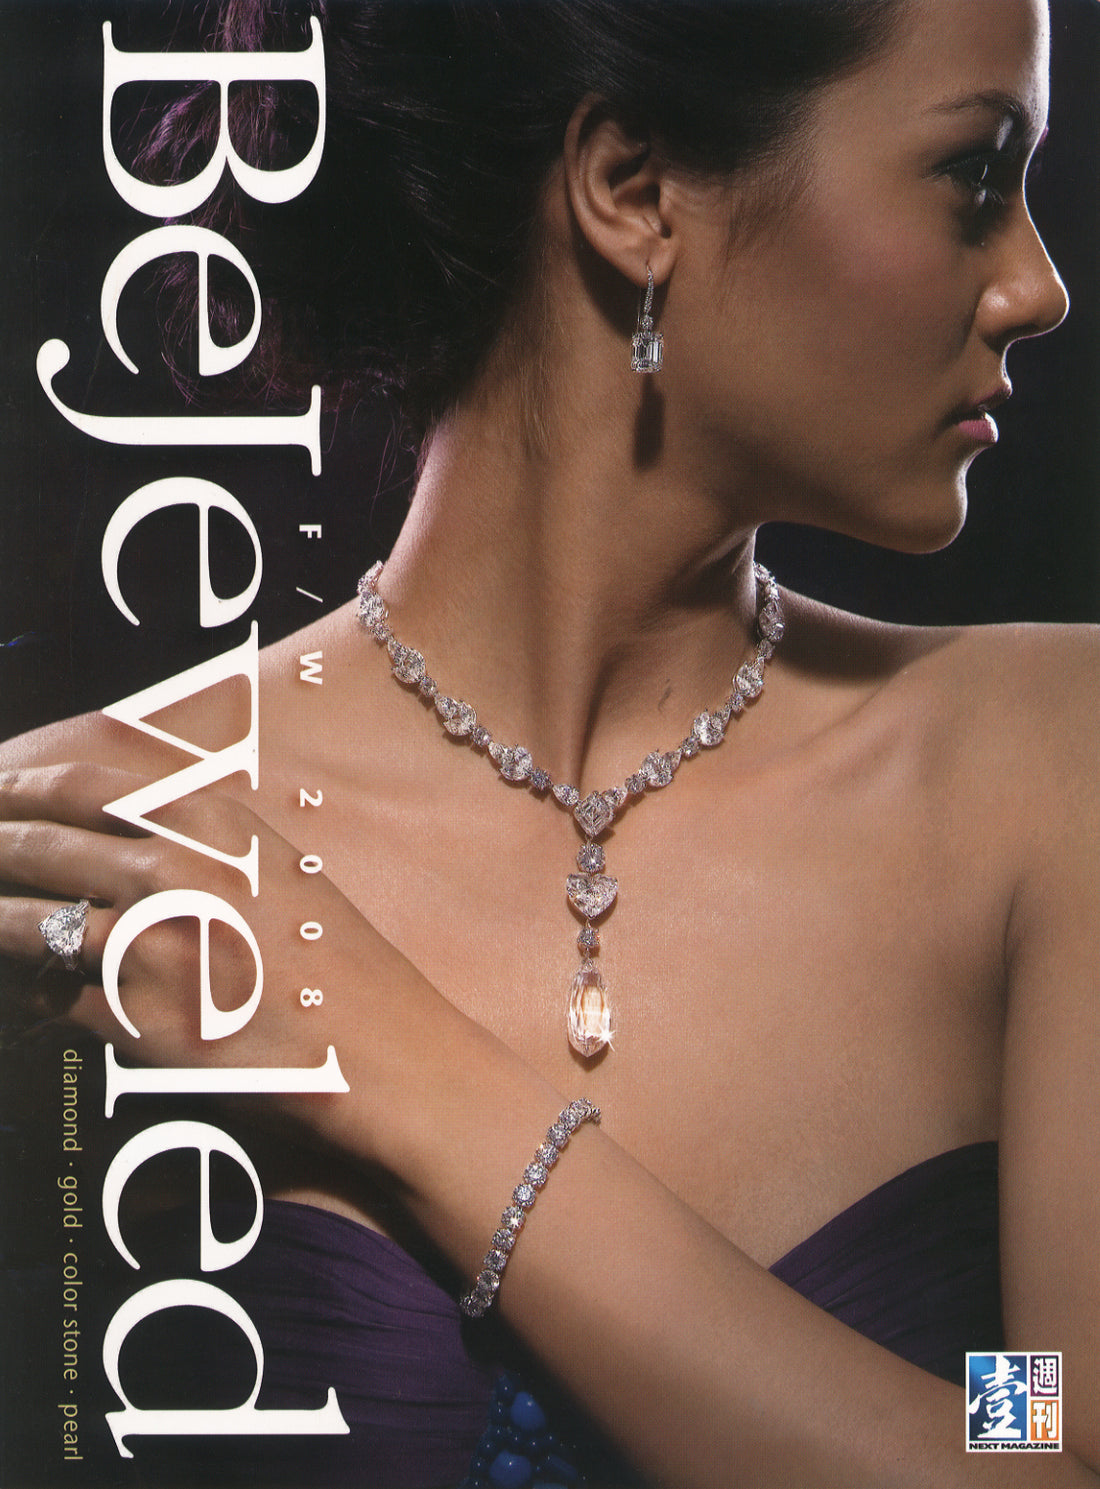 Bejeweled. Asia jewelry Magazine. (2008)